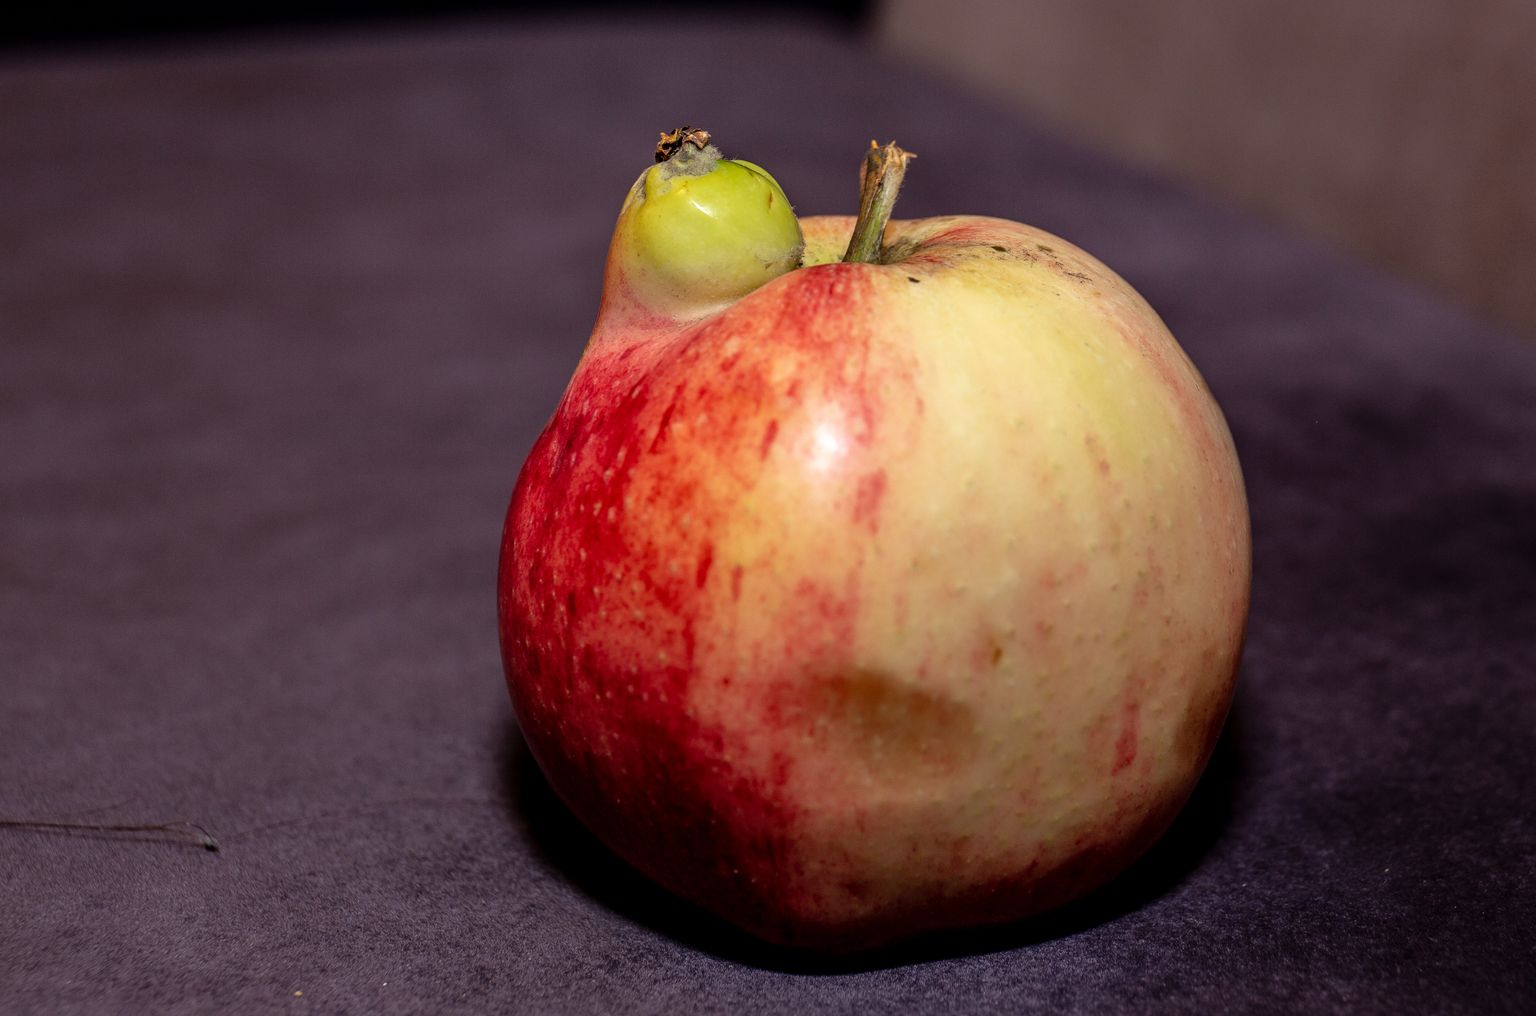 Õun, mis kasvatas endale tillukese kaksiku.